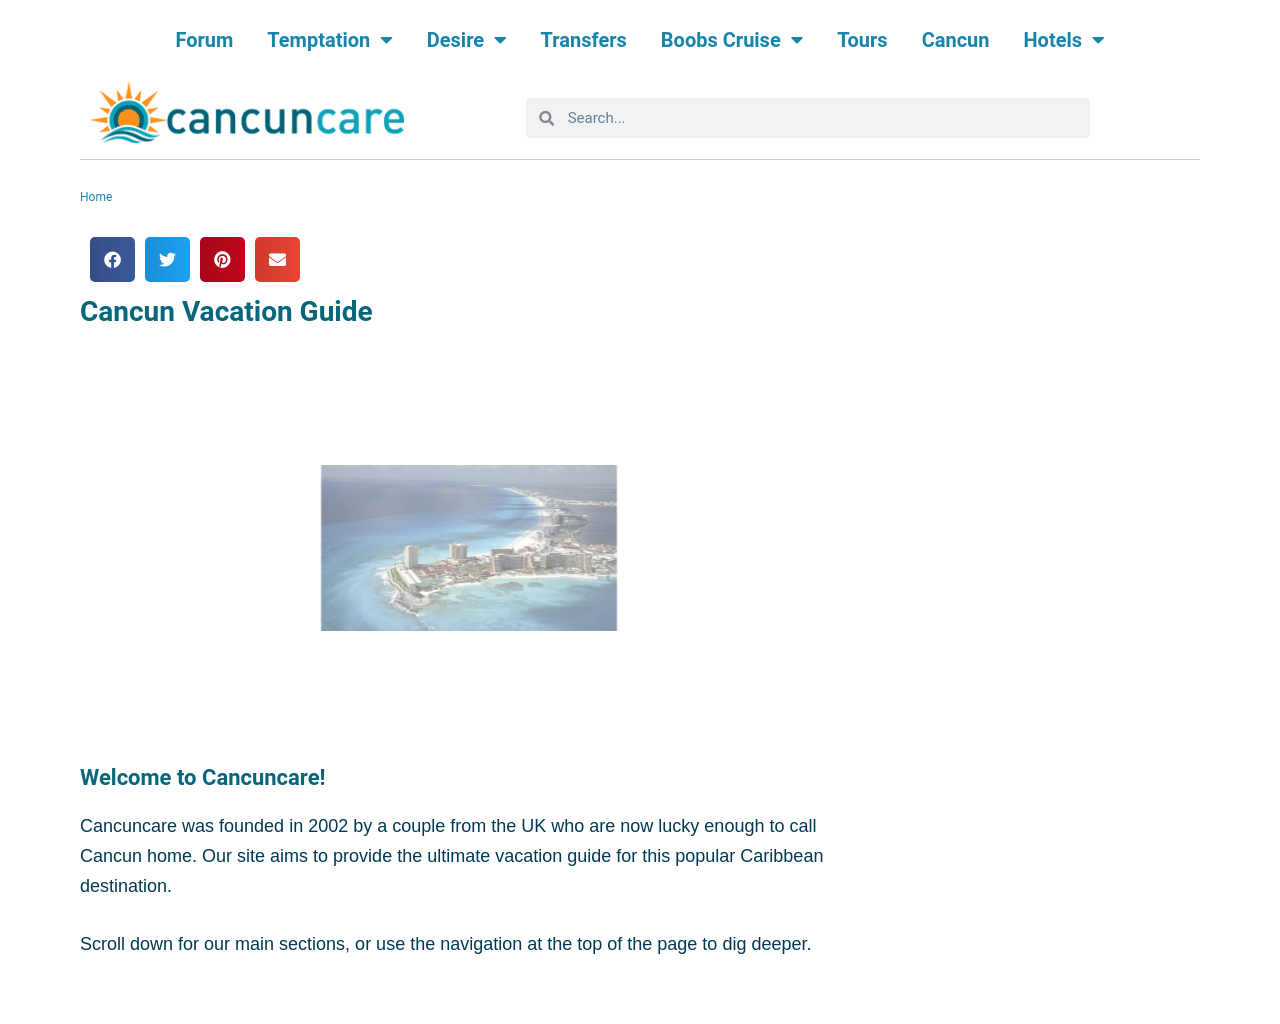 cancuncare.com